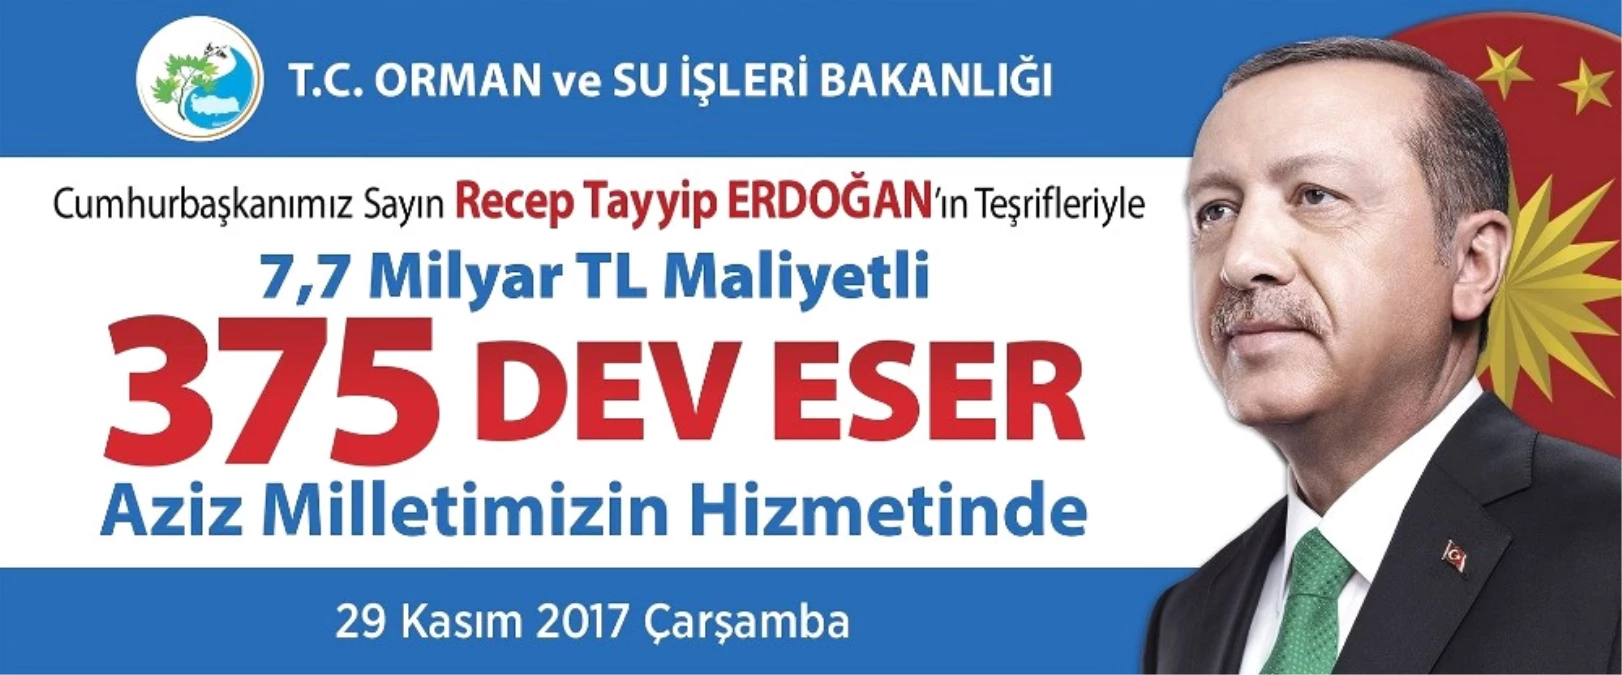 Cumhurbaşkanı Recep Tayyip Erdoğan\'ın Hizmete Alacağı Eserlerden Kütahya da Payını Alacak